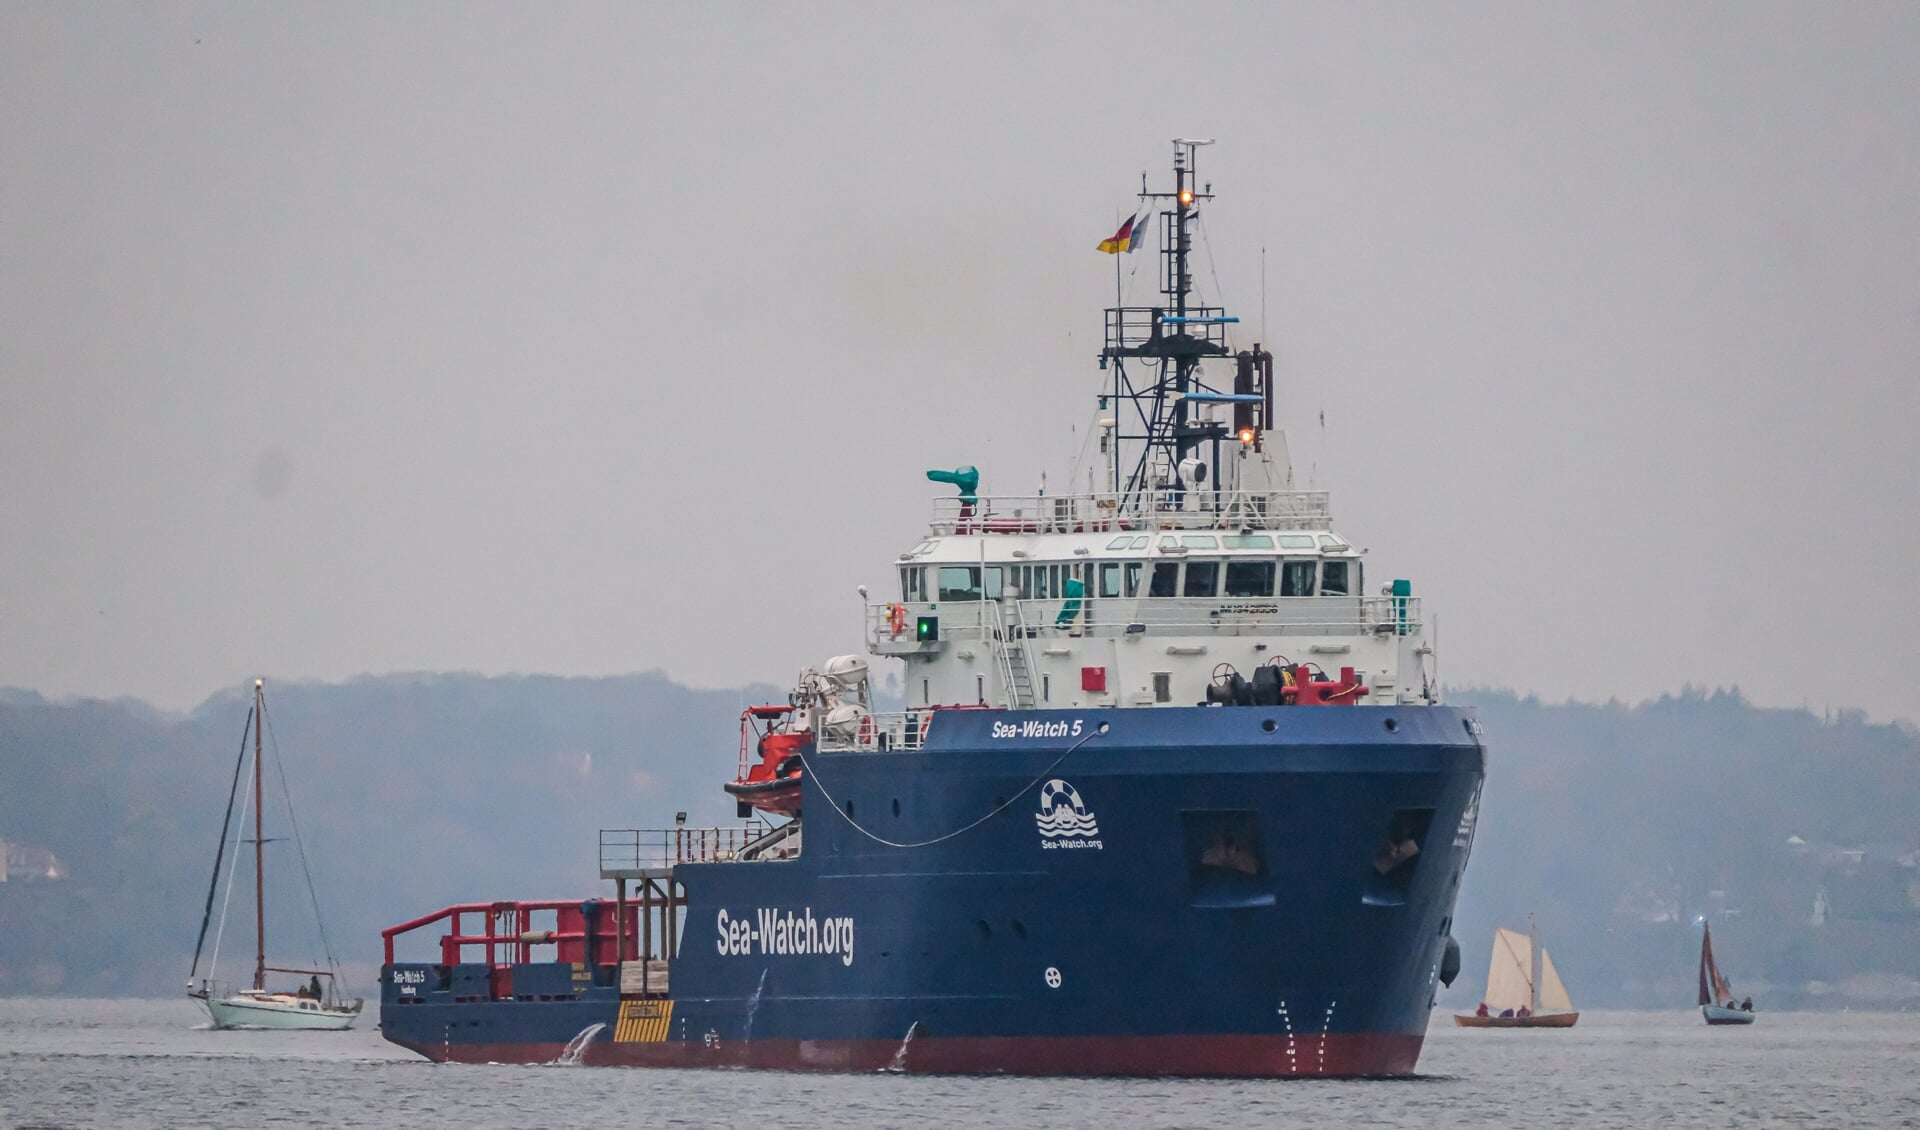 Klokken 15.45 søndag sejlede det kommende middelhavske redningsskib "Sea-Watch 5" ind i Flensborg havn. Foto: